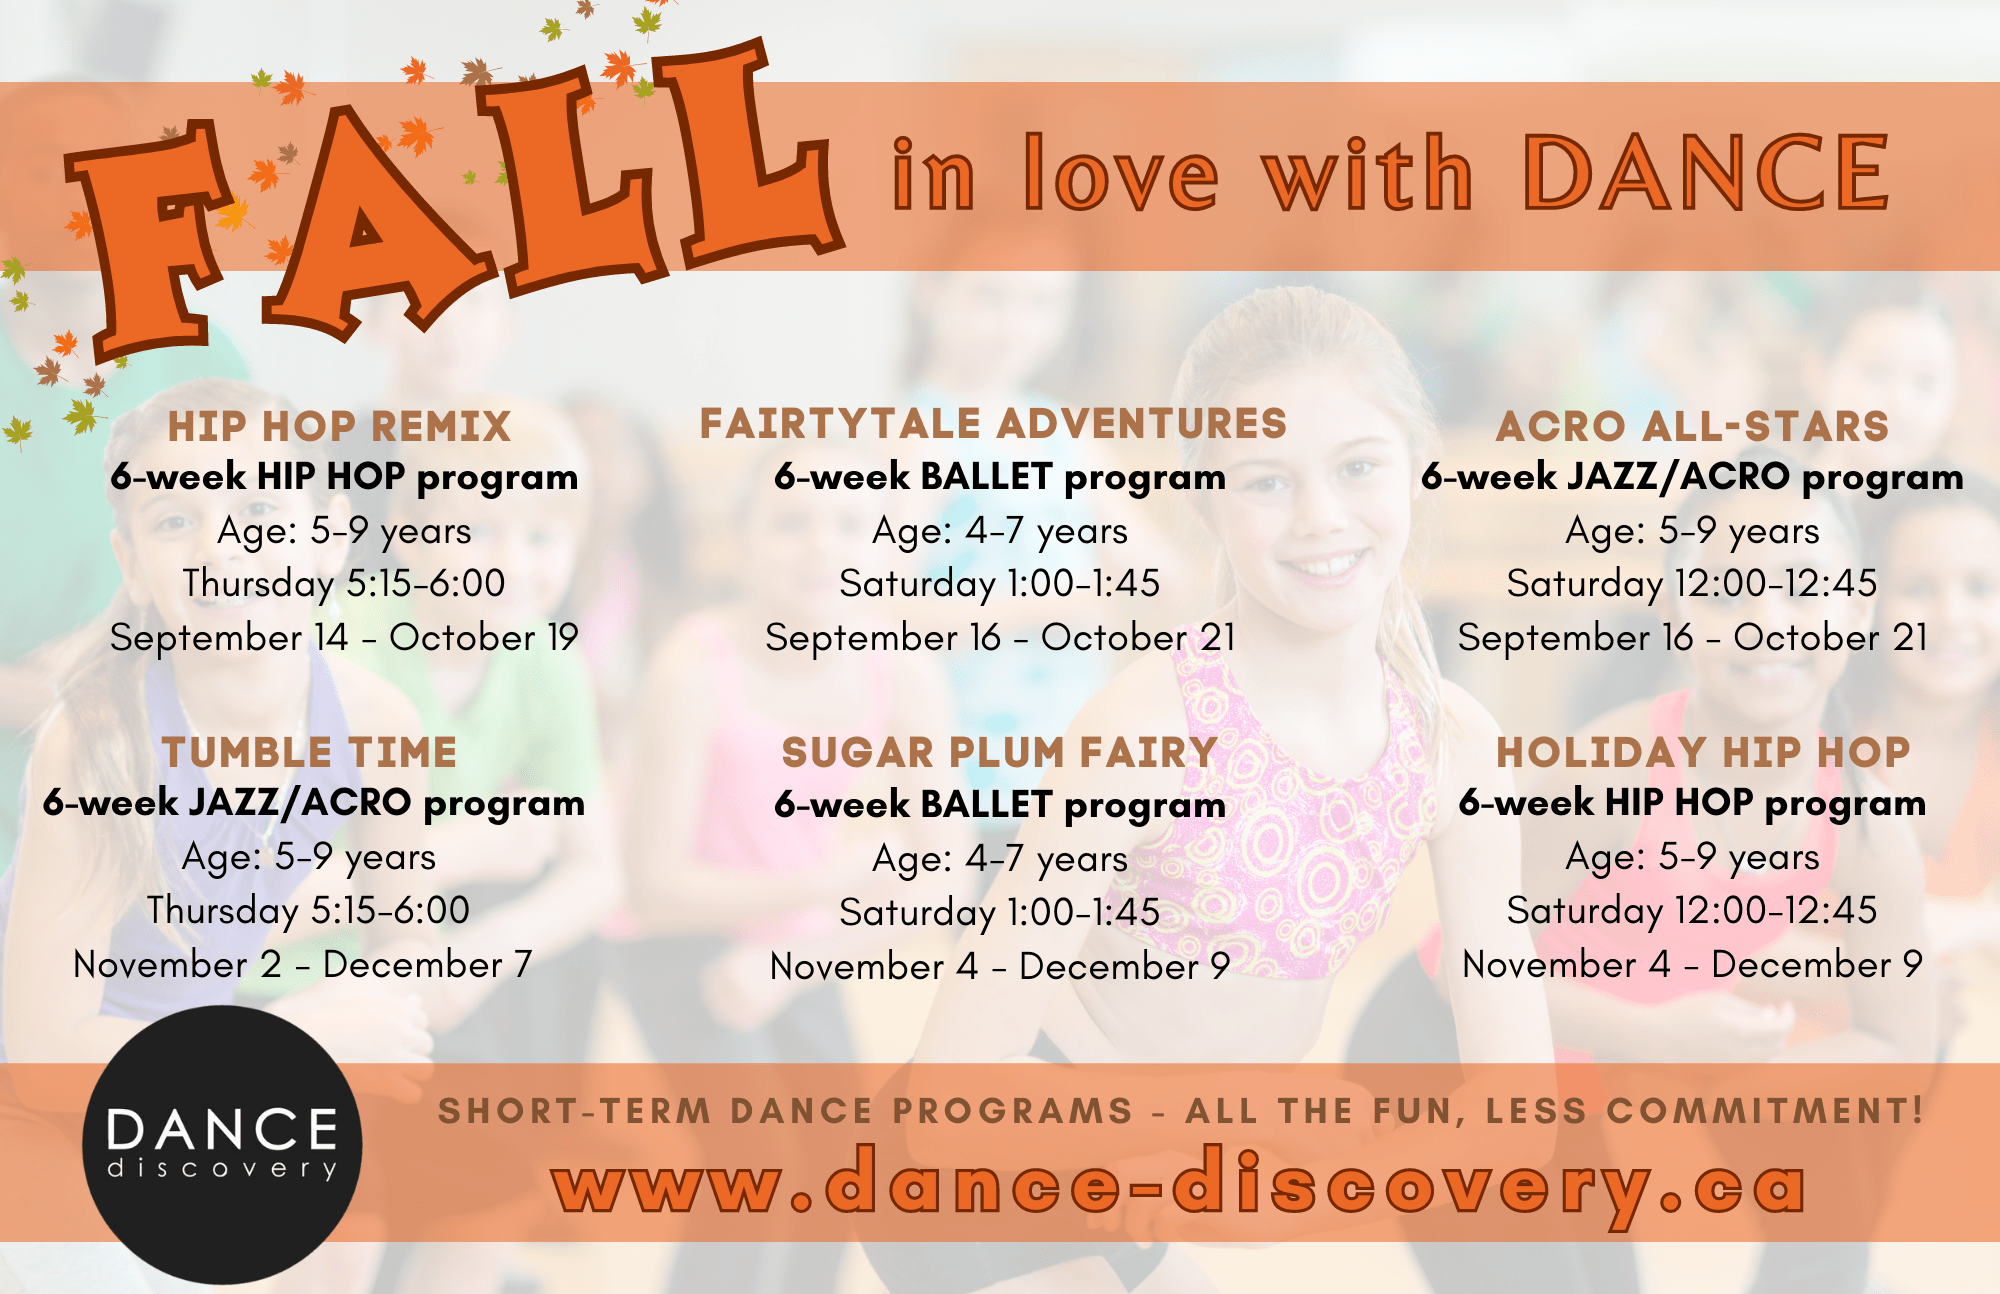 Programas de otoño de descubrimiento de danza